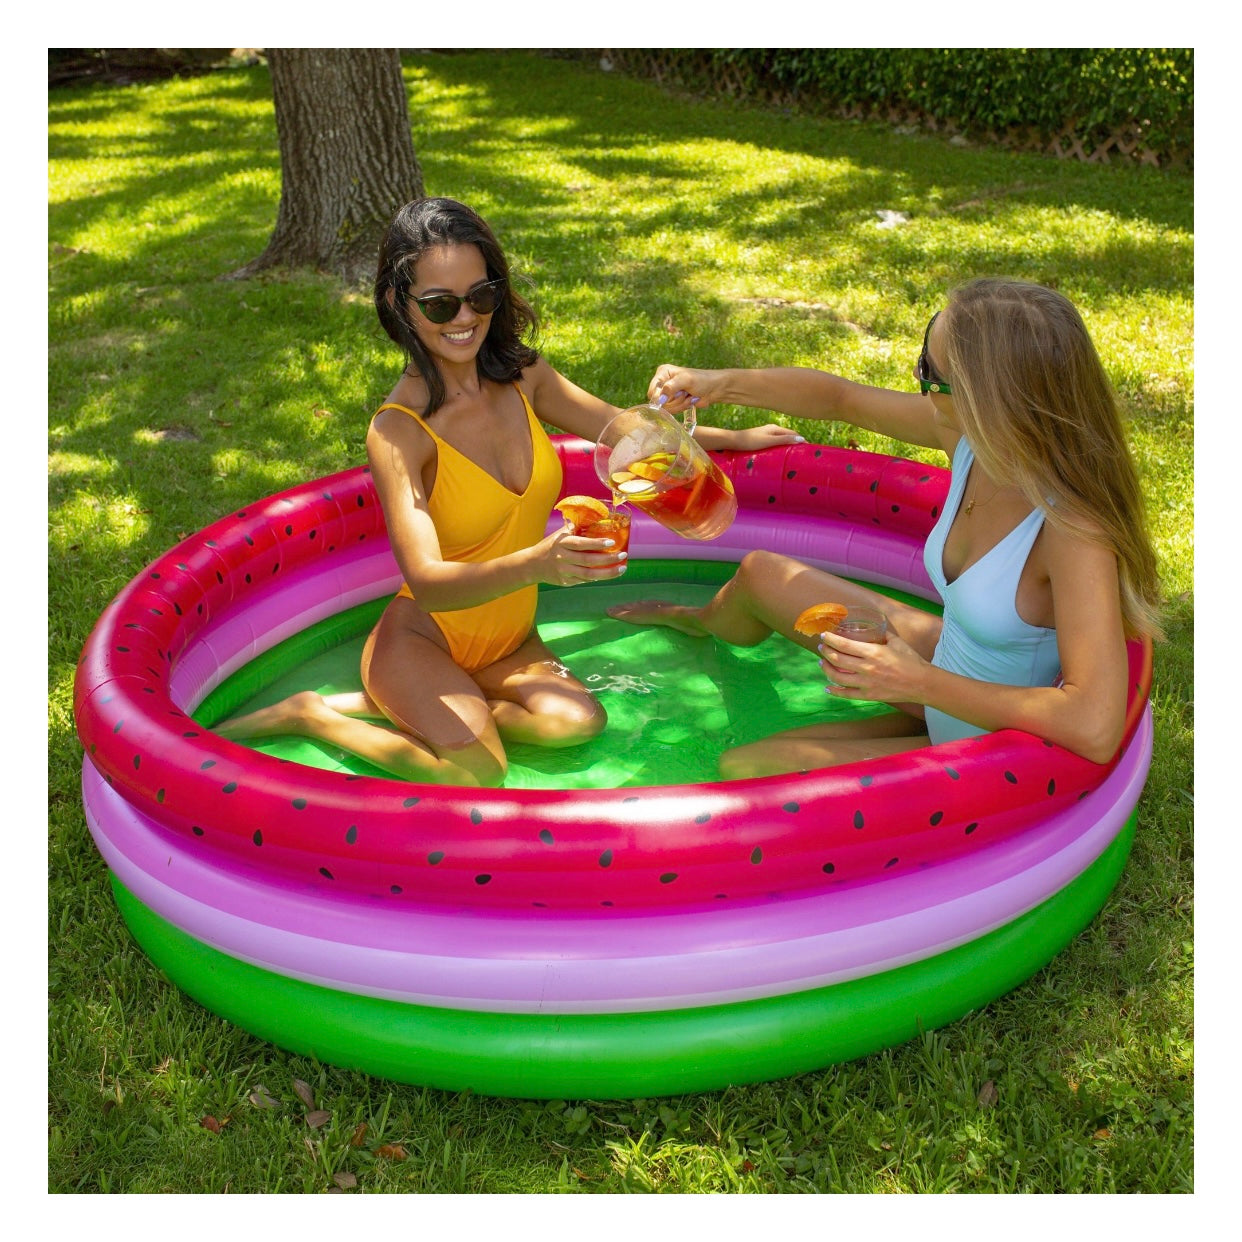 Pool Candy Sunning Pool Watermelon - El Mercado de Juguetes